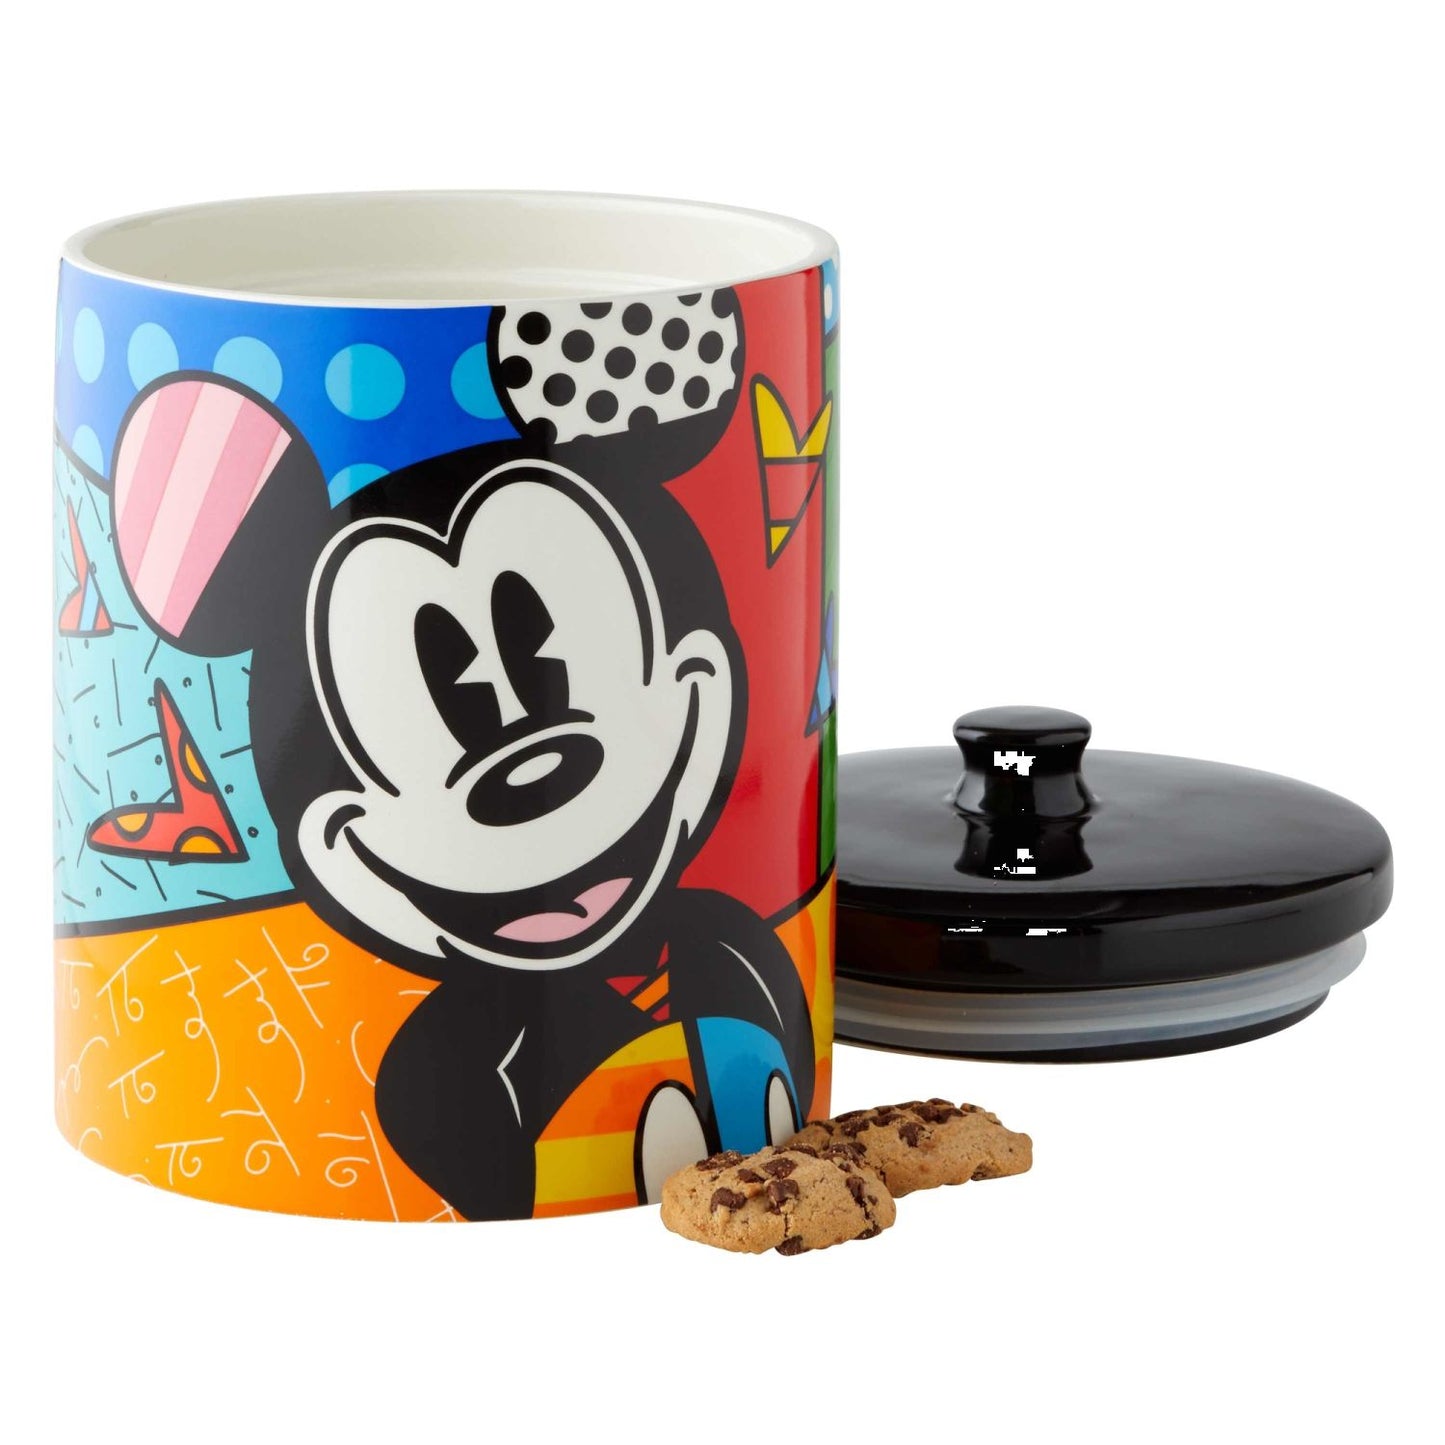 Enesco Disney by Britto Mickey Cookie Jar